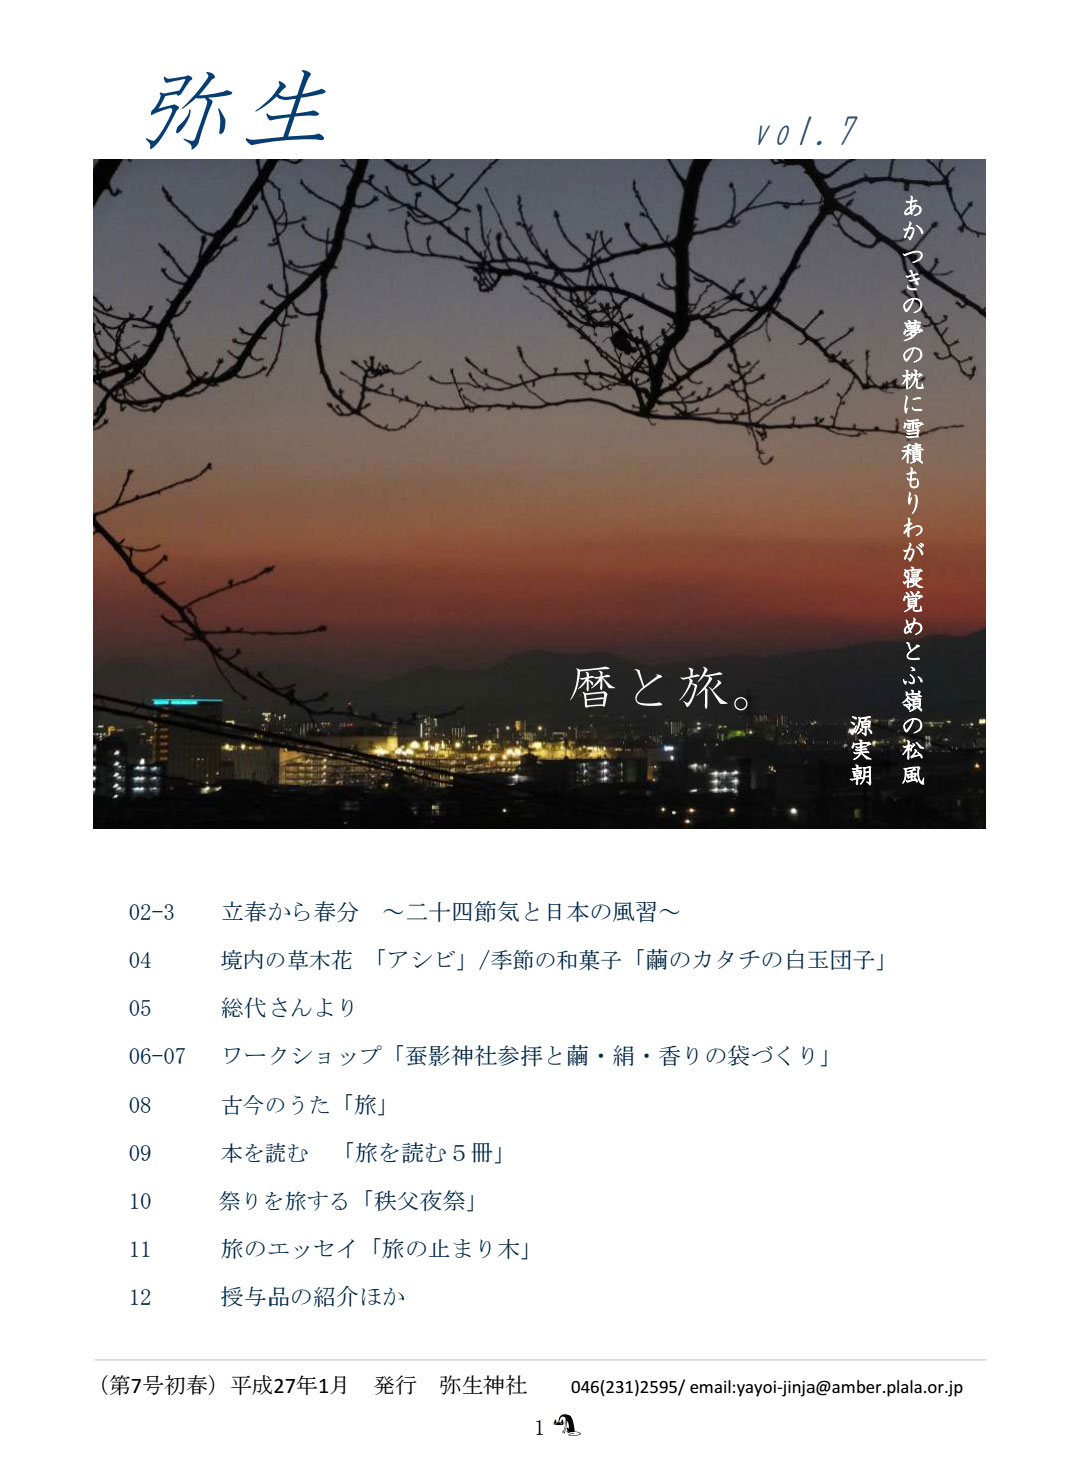 社報「弥生」vol.7